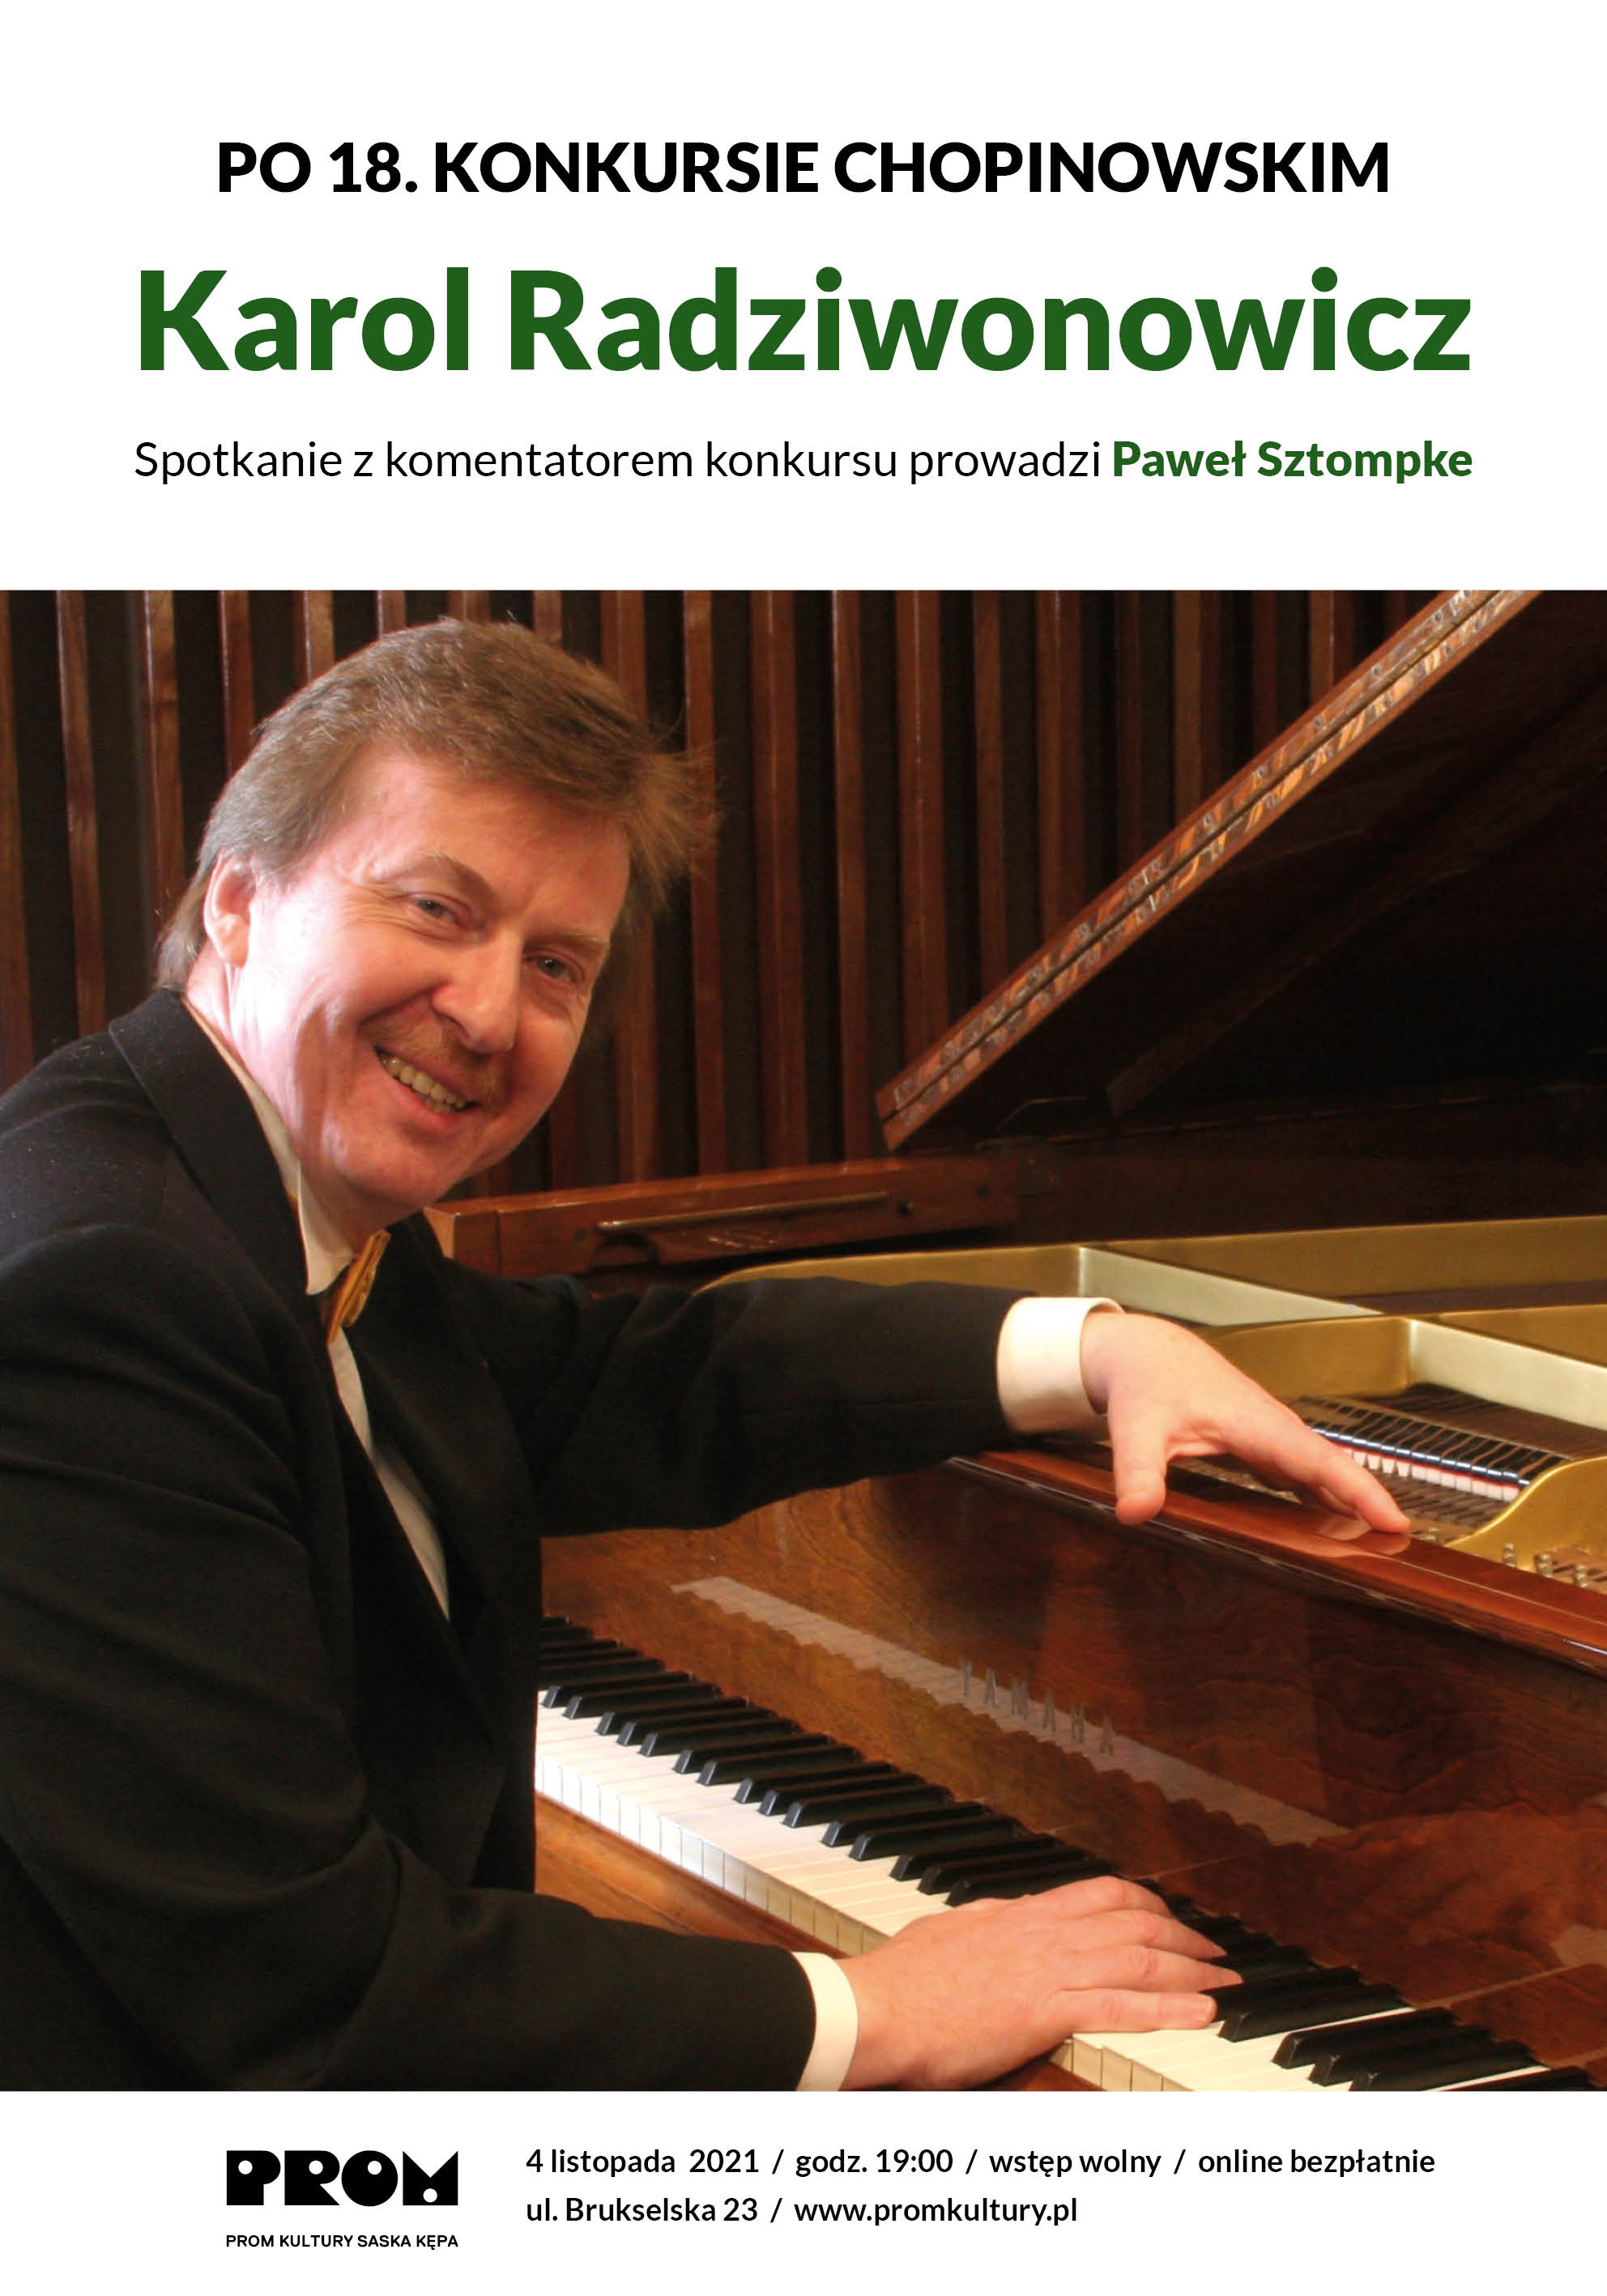 Karol Radziwonowicz - pianista, komentator Międzynarodowego Konkursu Pianistycznego im. Fryderyka Chopina. Spotkanie prowadzi Paweł Sztompke.